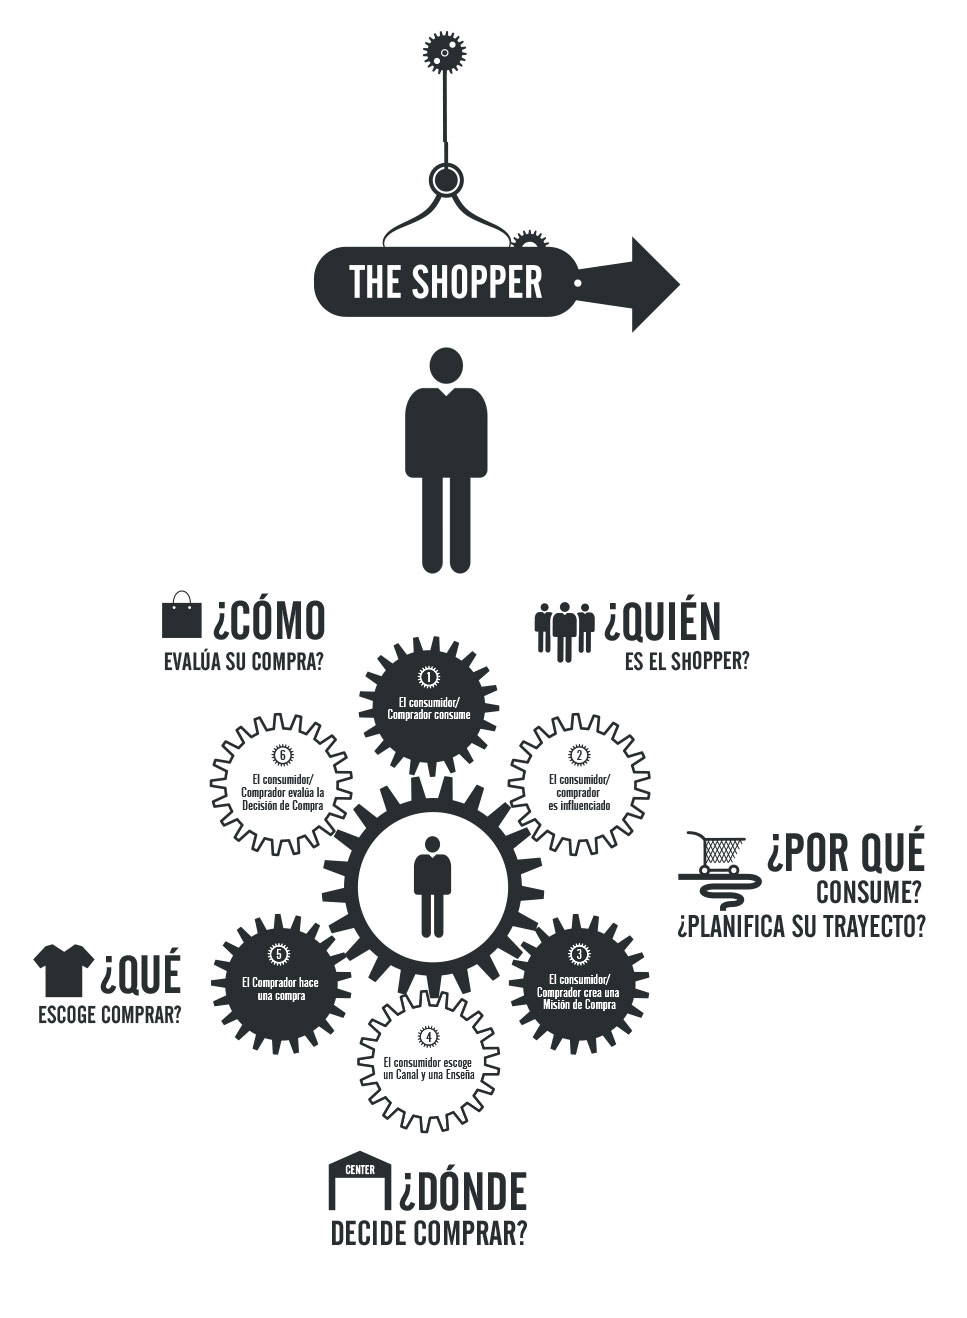 innovacion gran consumo infografia del shopper